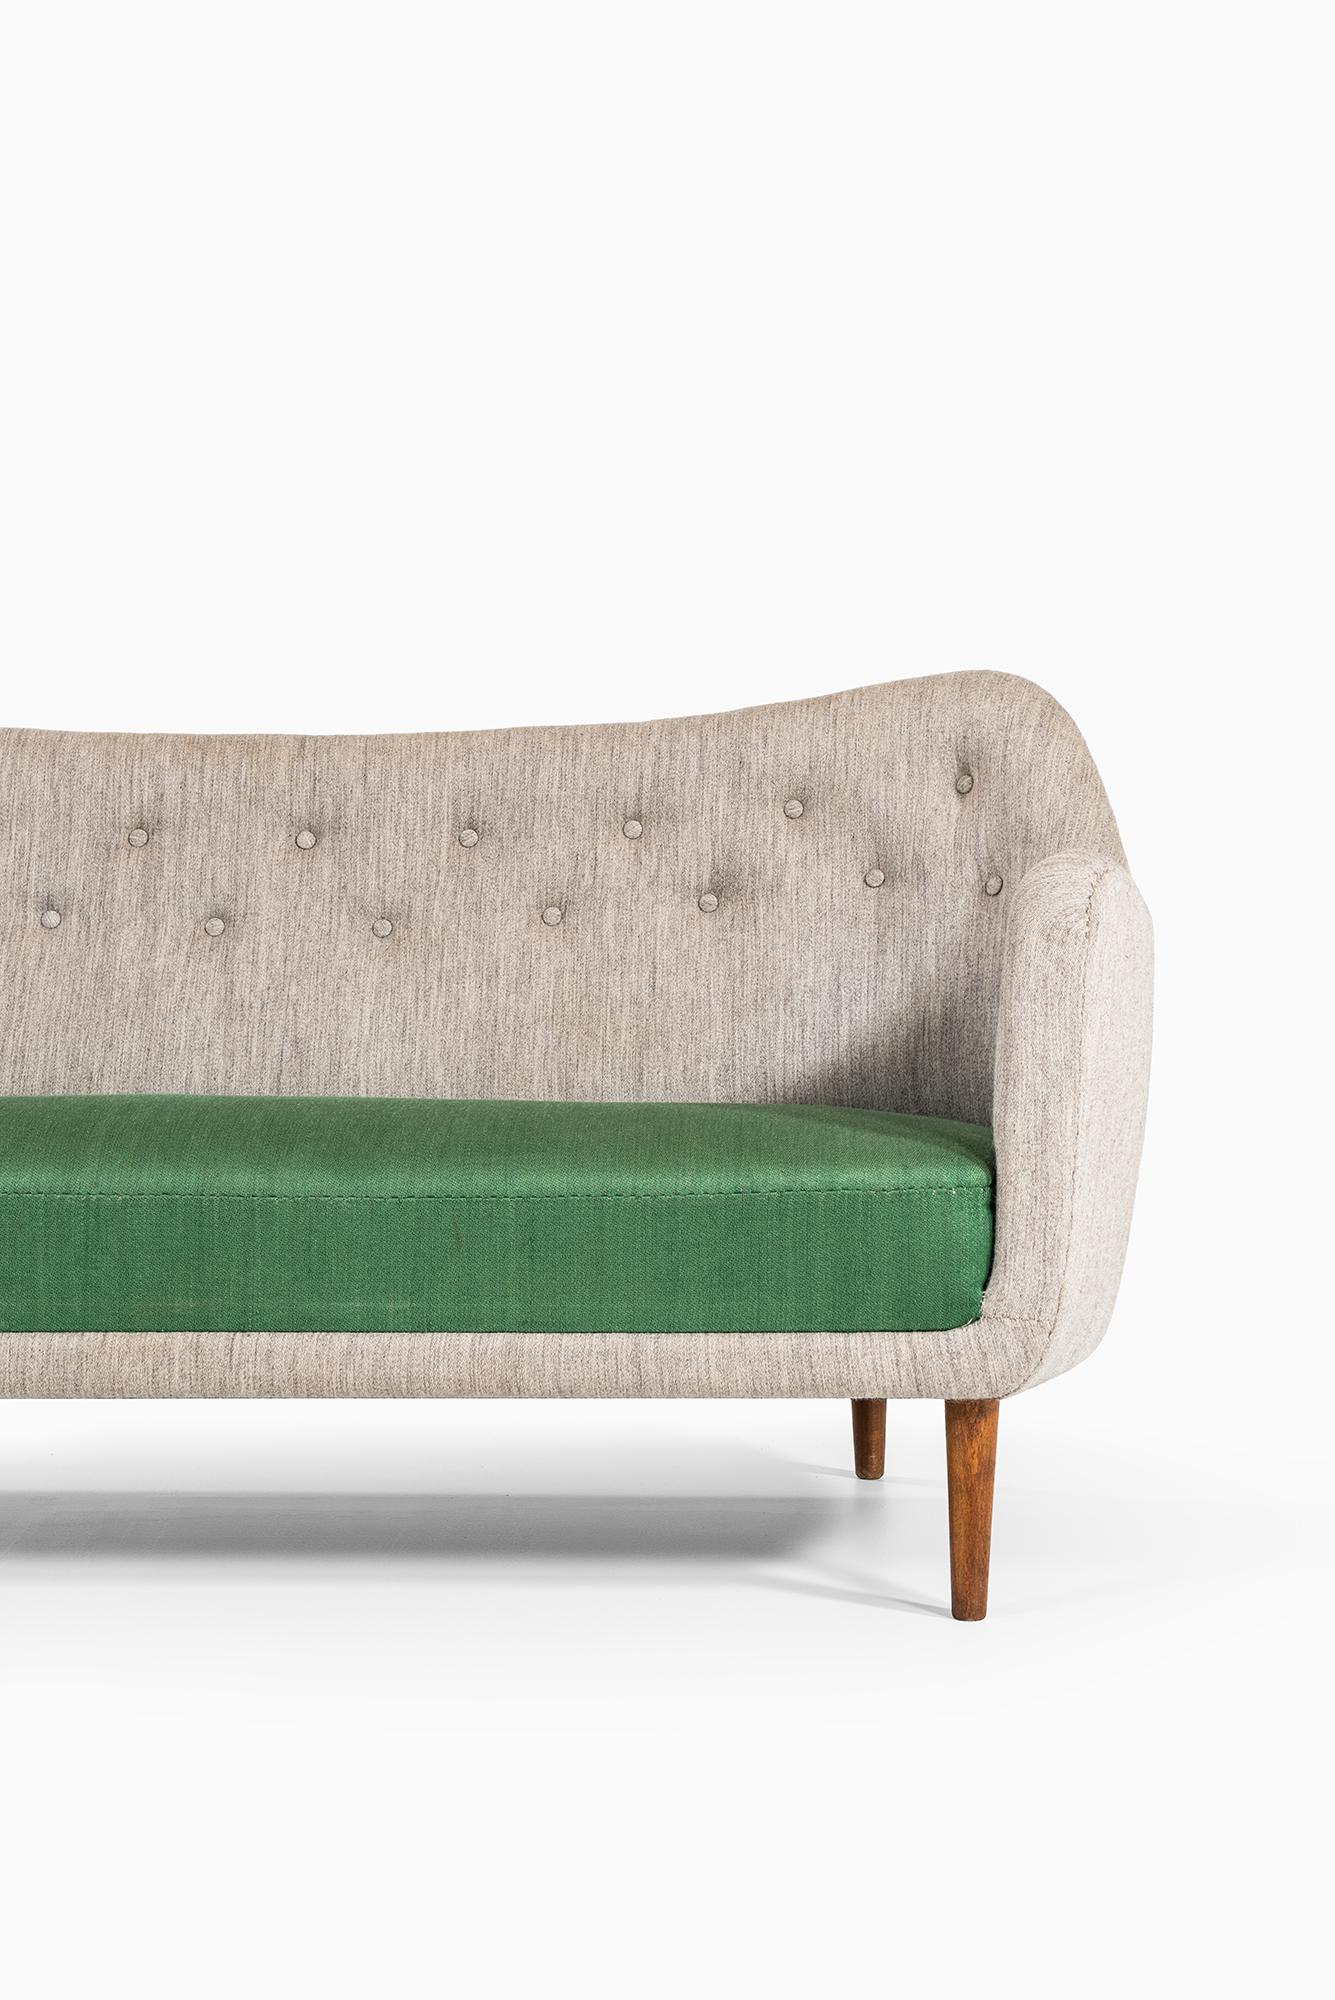 Rare sofa model BO64 designed by Finn Juhl. Produced by Bovirke in Denmark.